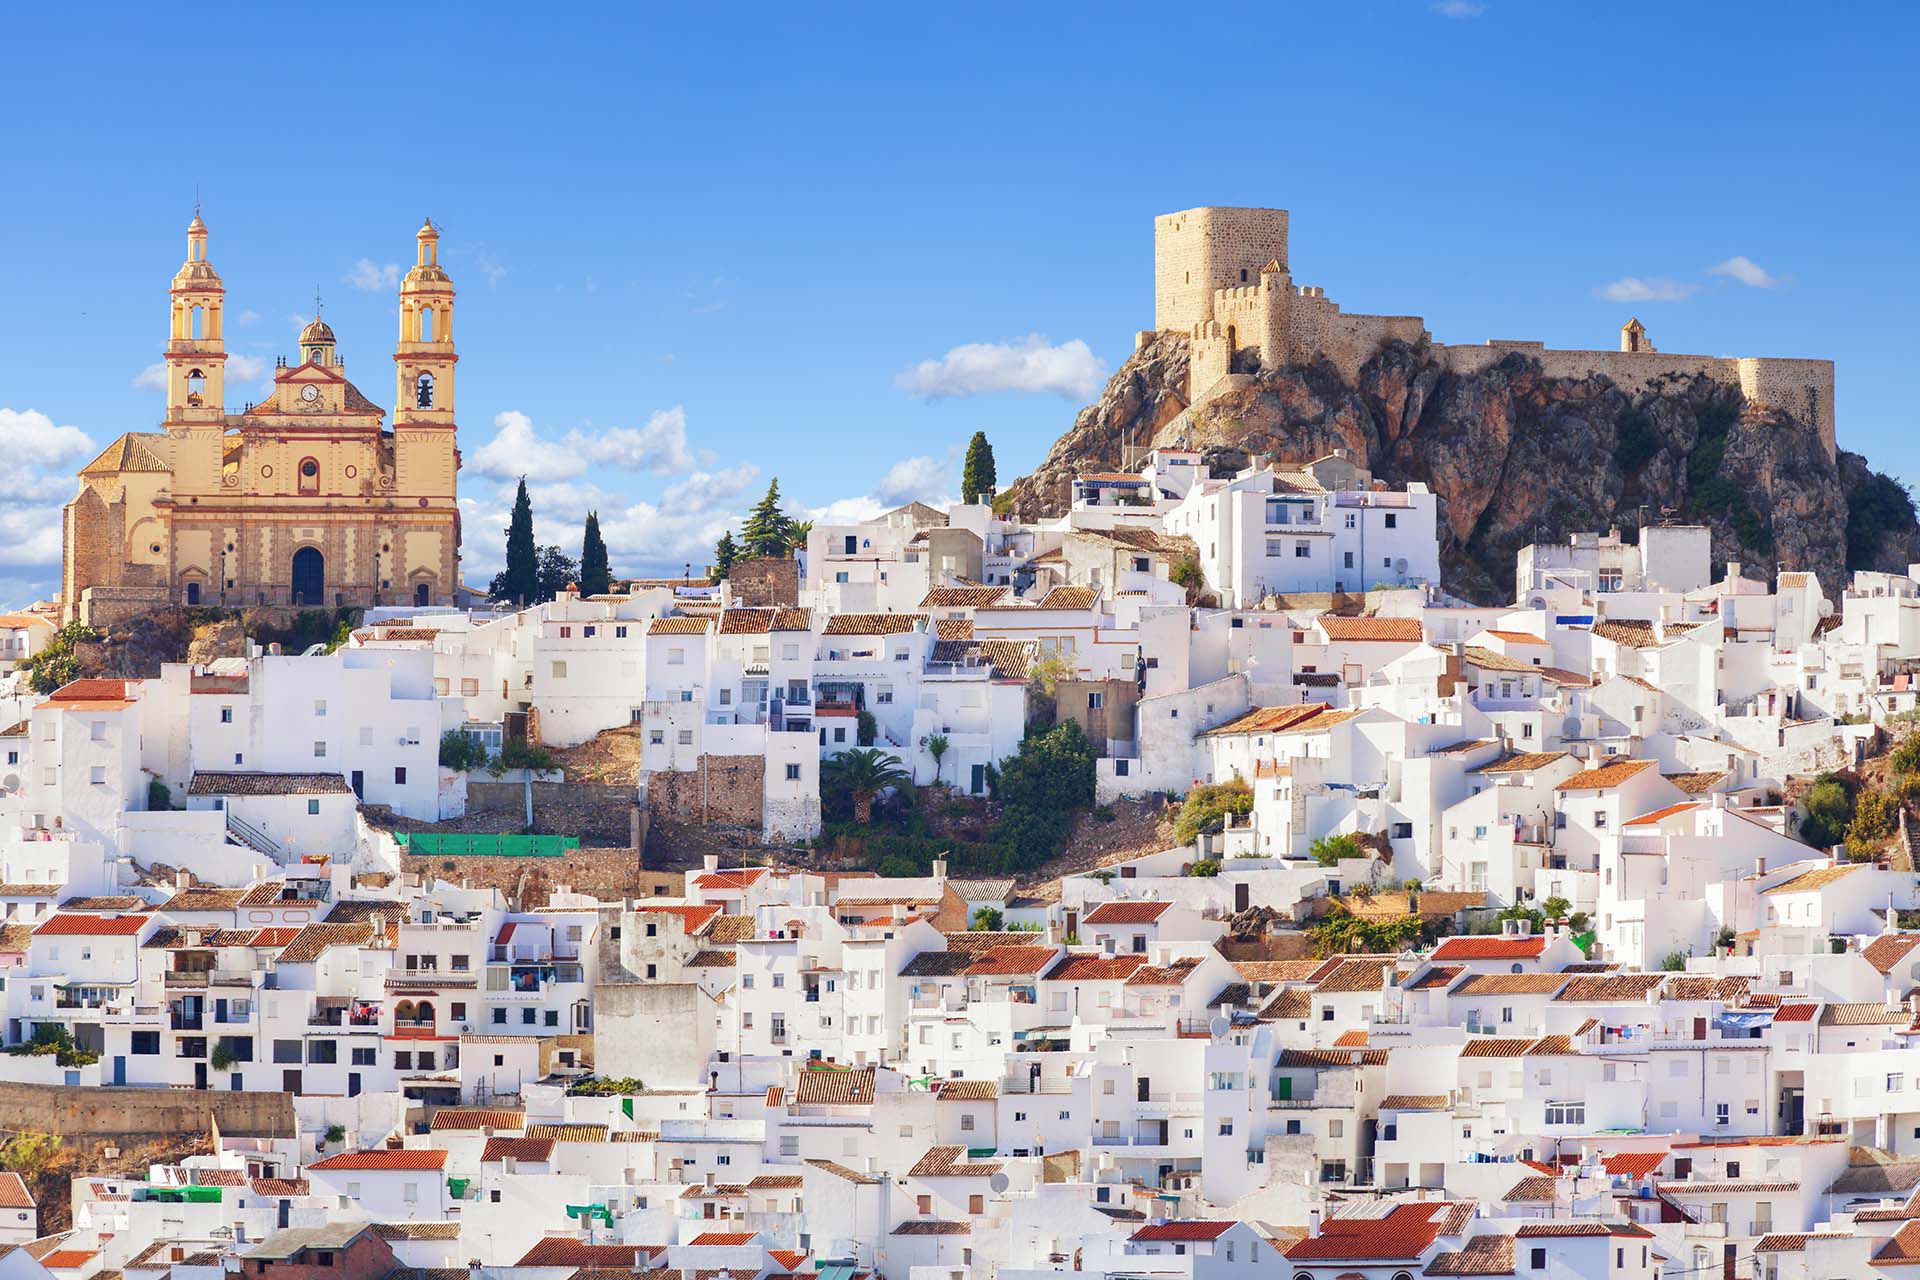 Si bien Andalucía es un destino turístico común, Cádiz sigue bastante subestimado. Esta ciudad es una de las ciudades habitadas más antiguas de Europa